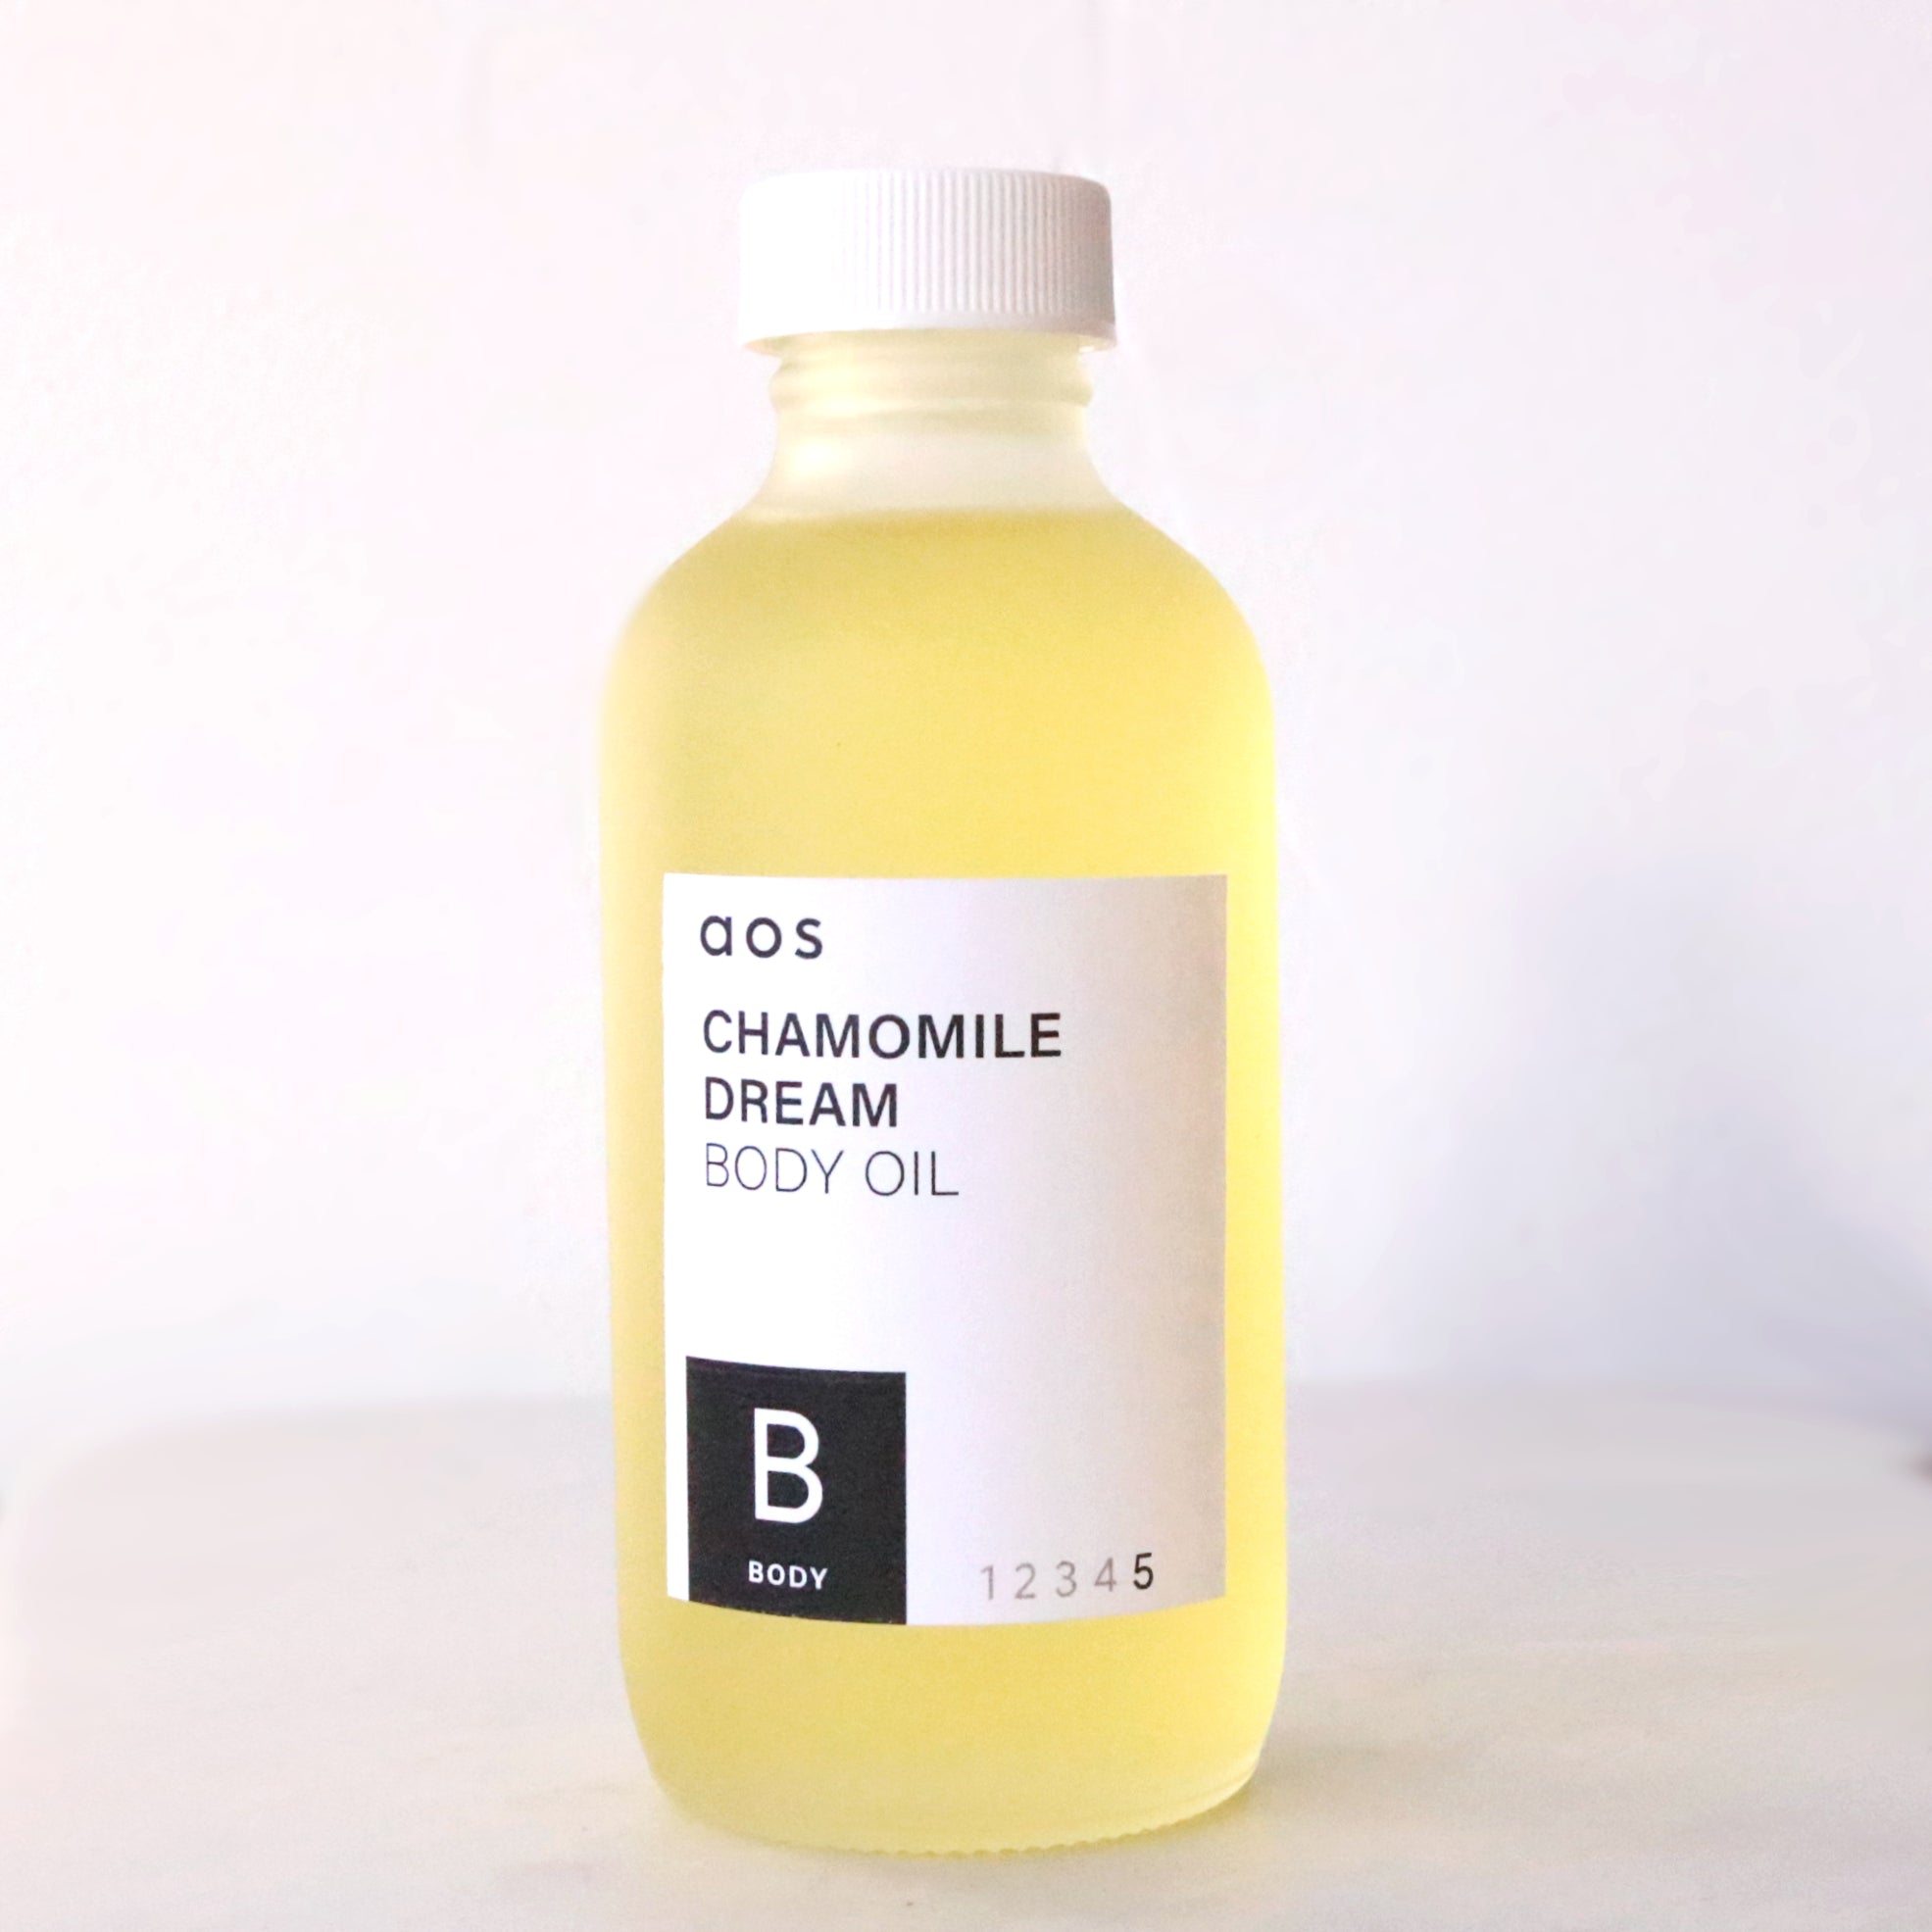 Chamomile Dream Body Oil